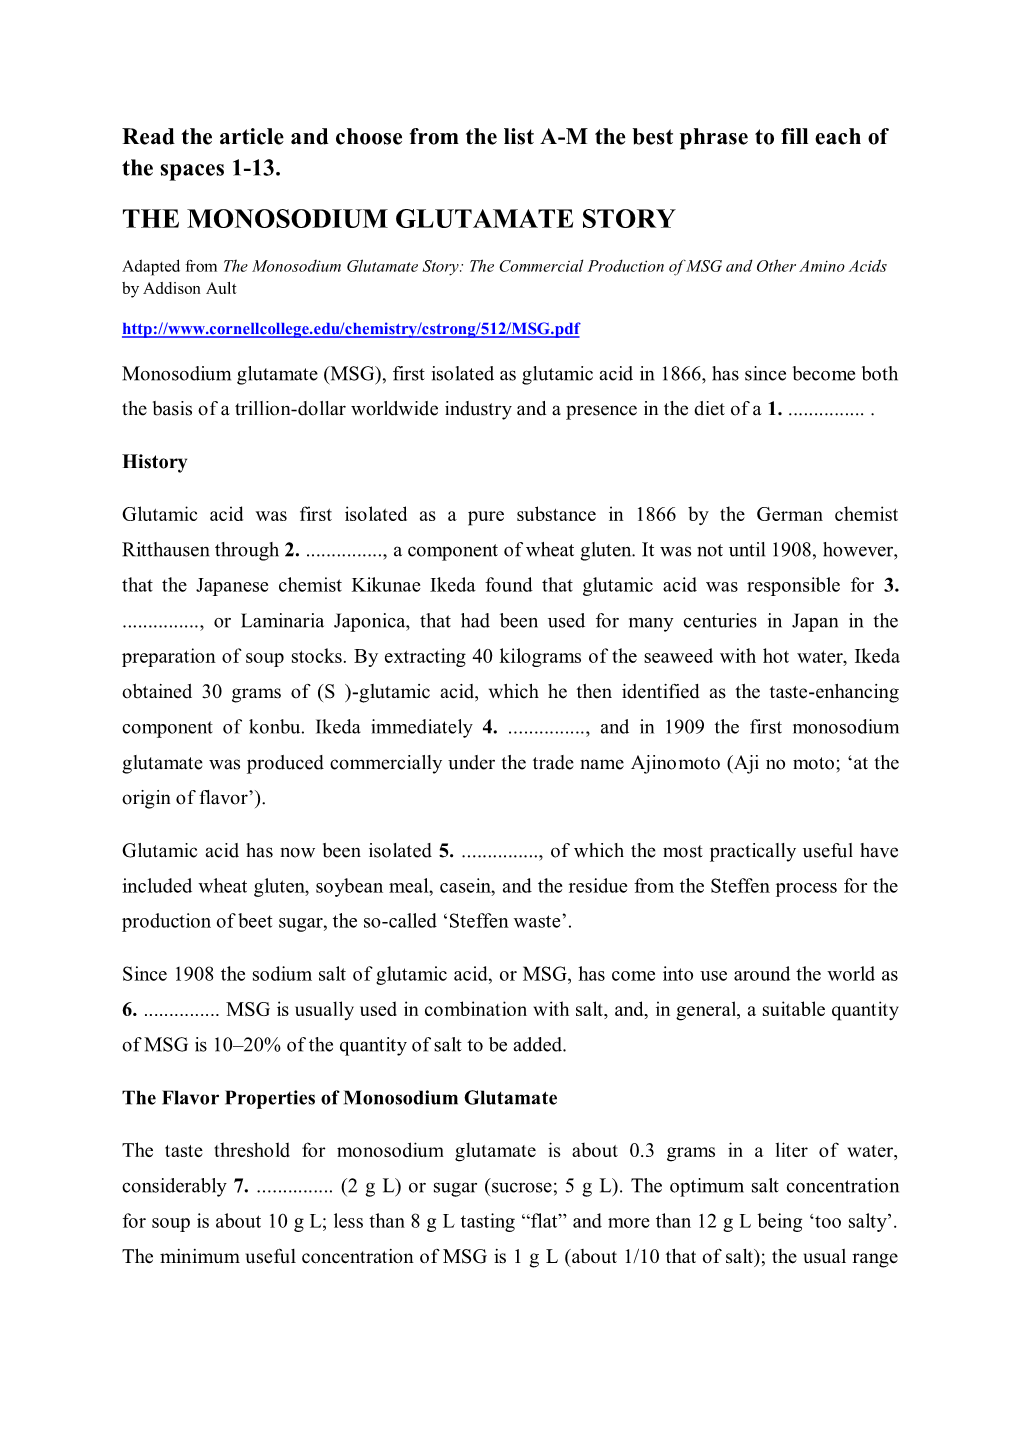 The Monosodium Glutamate Story